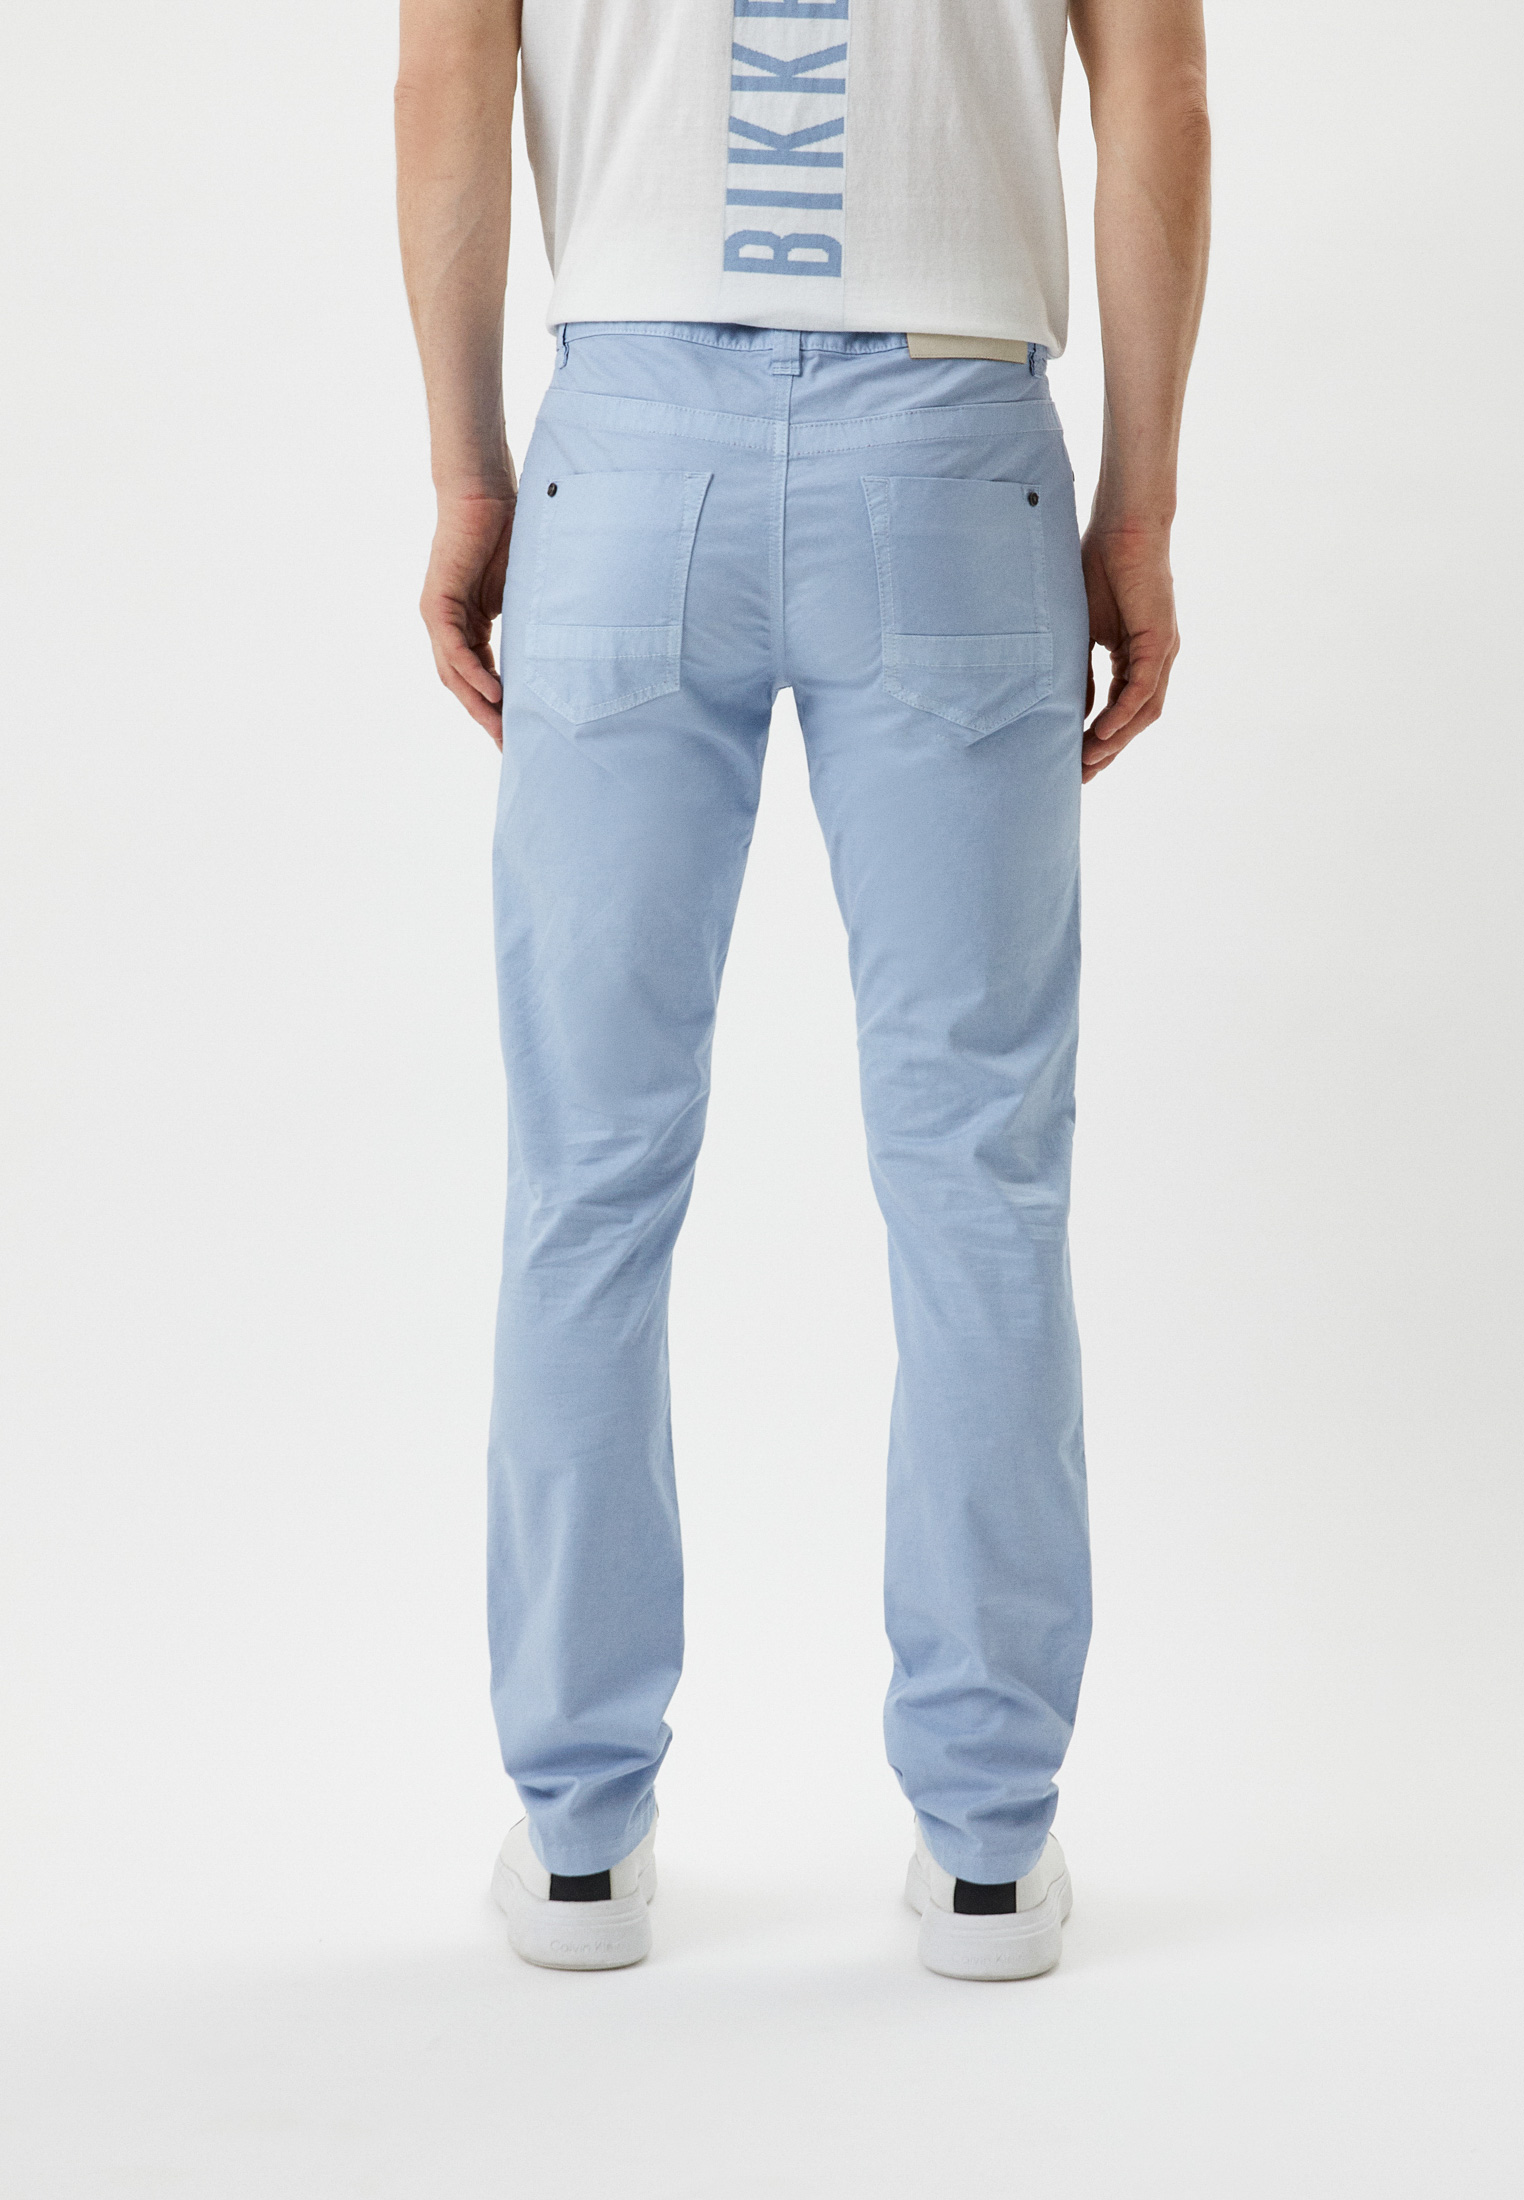 Мужские повседневные брюки Bikkembergs (Биккембергс) CQ10189S3813: изображение 3